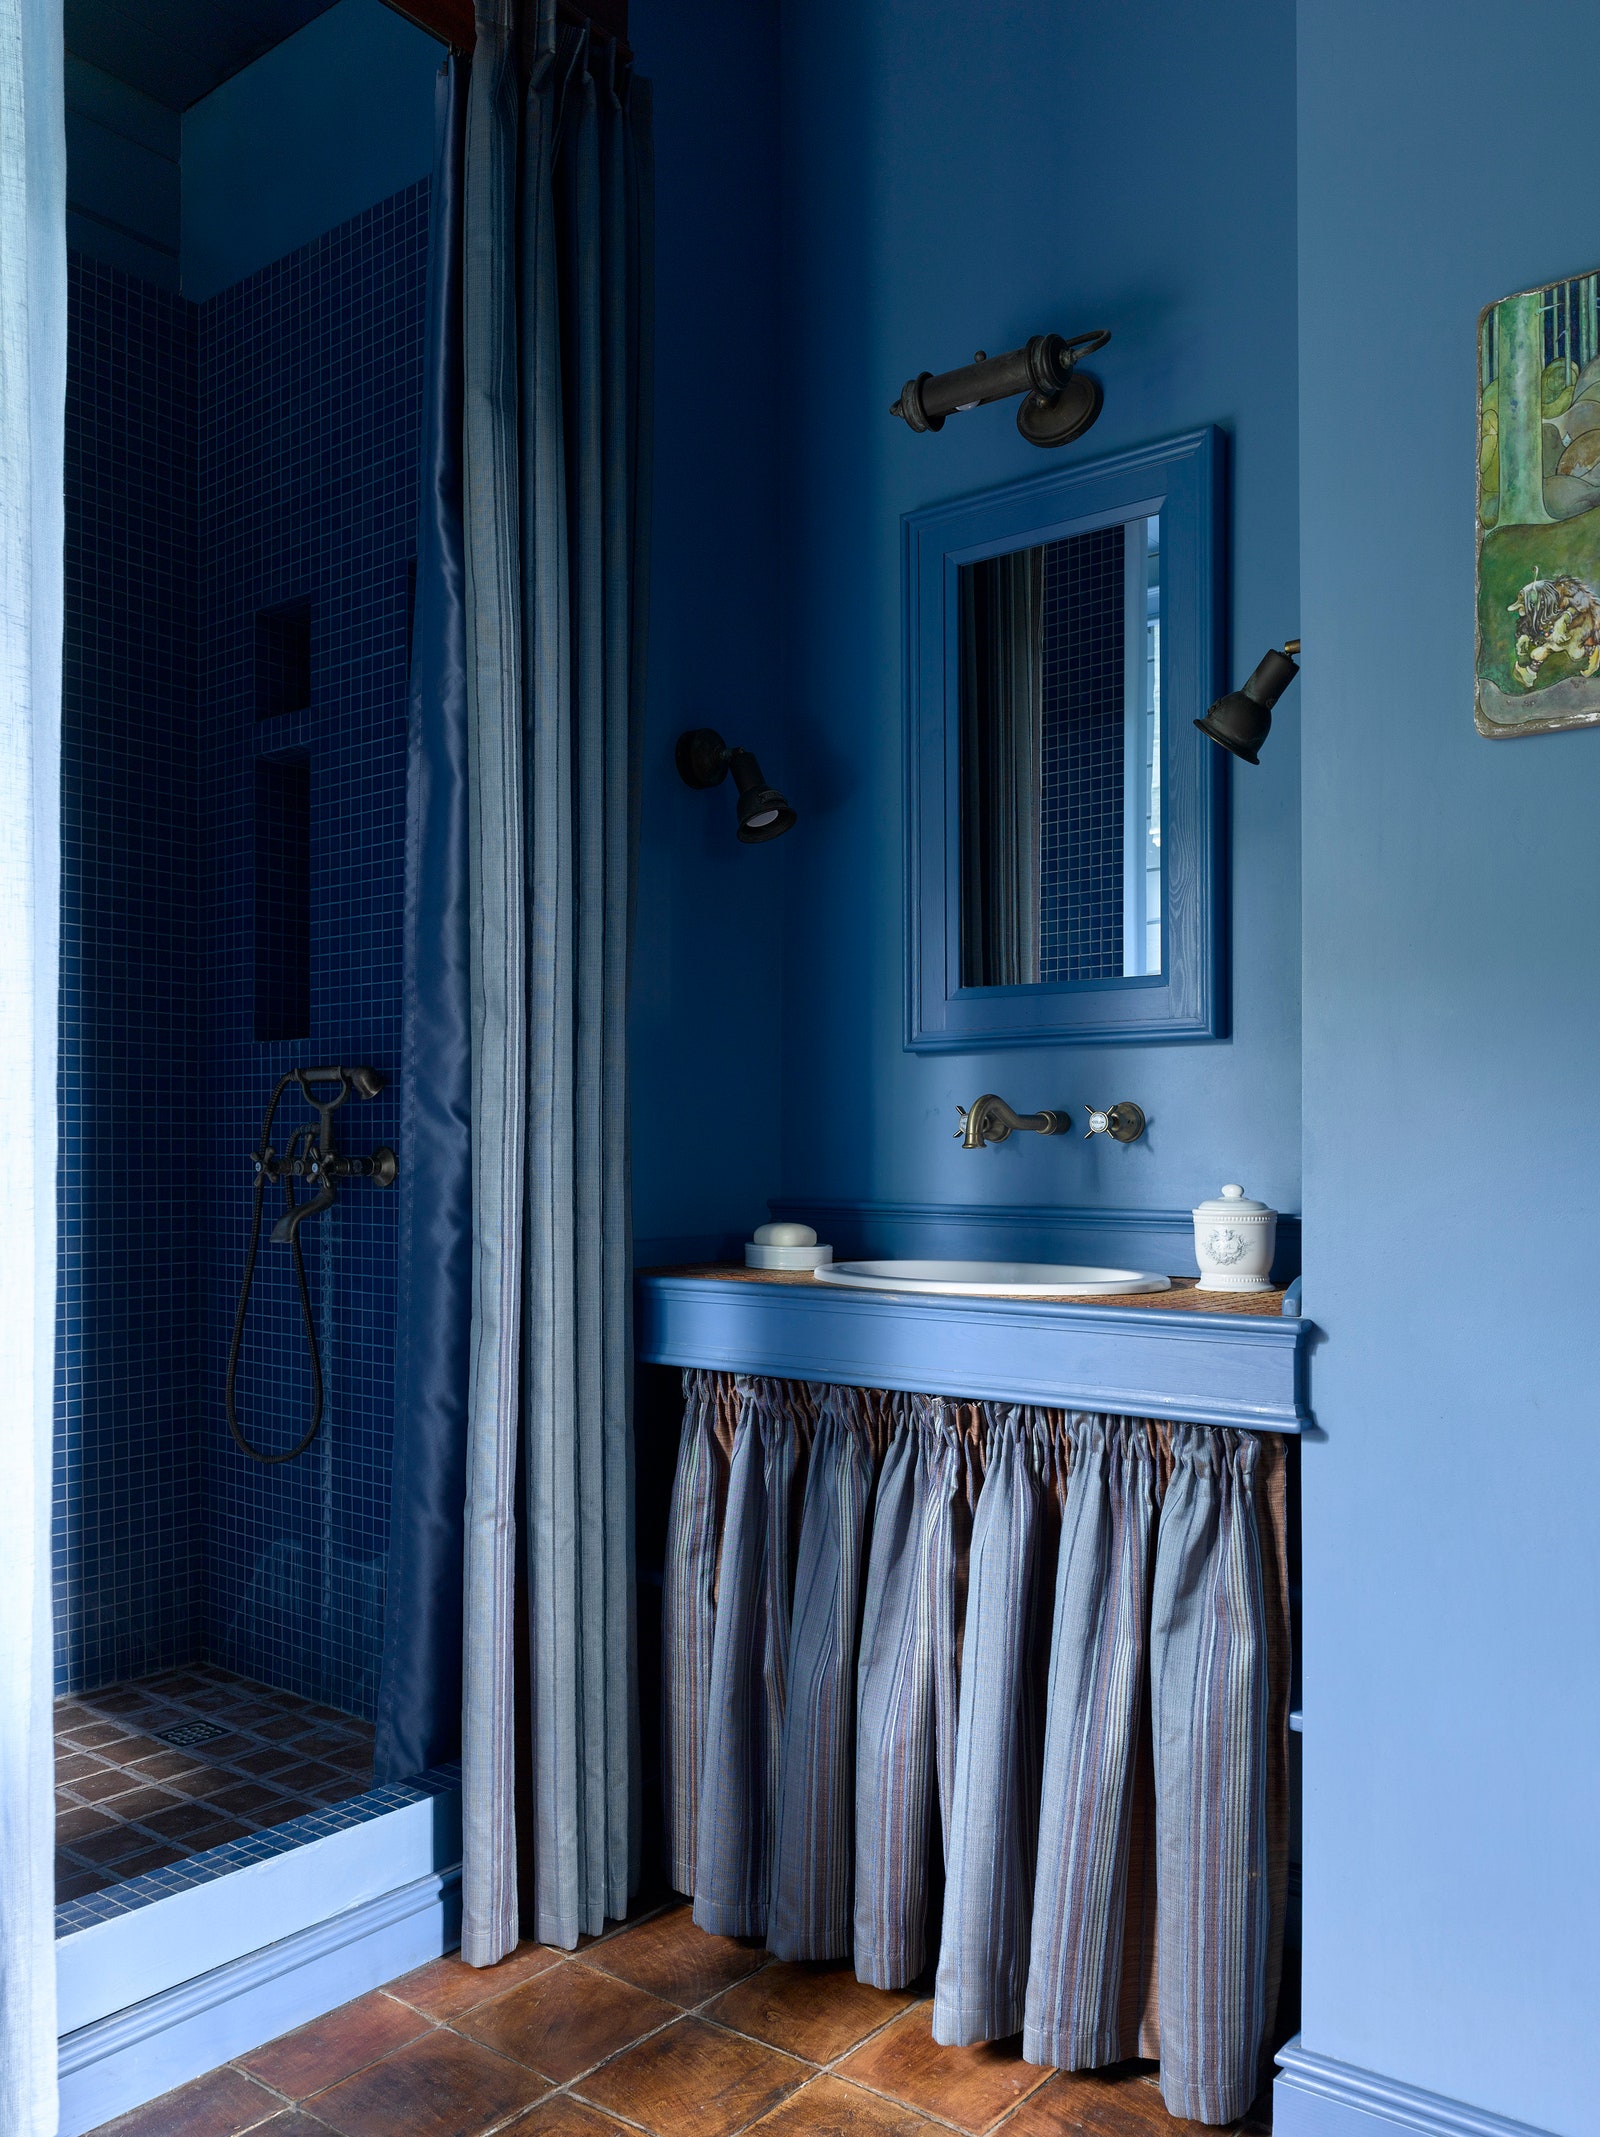 Гостевая ванная комната в доме по дизайну Натальи Юниной.